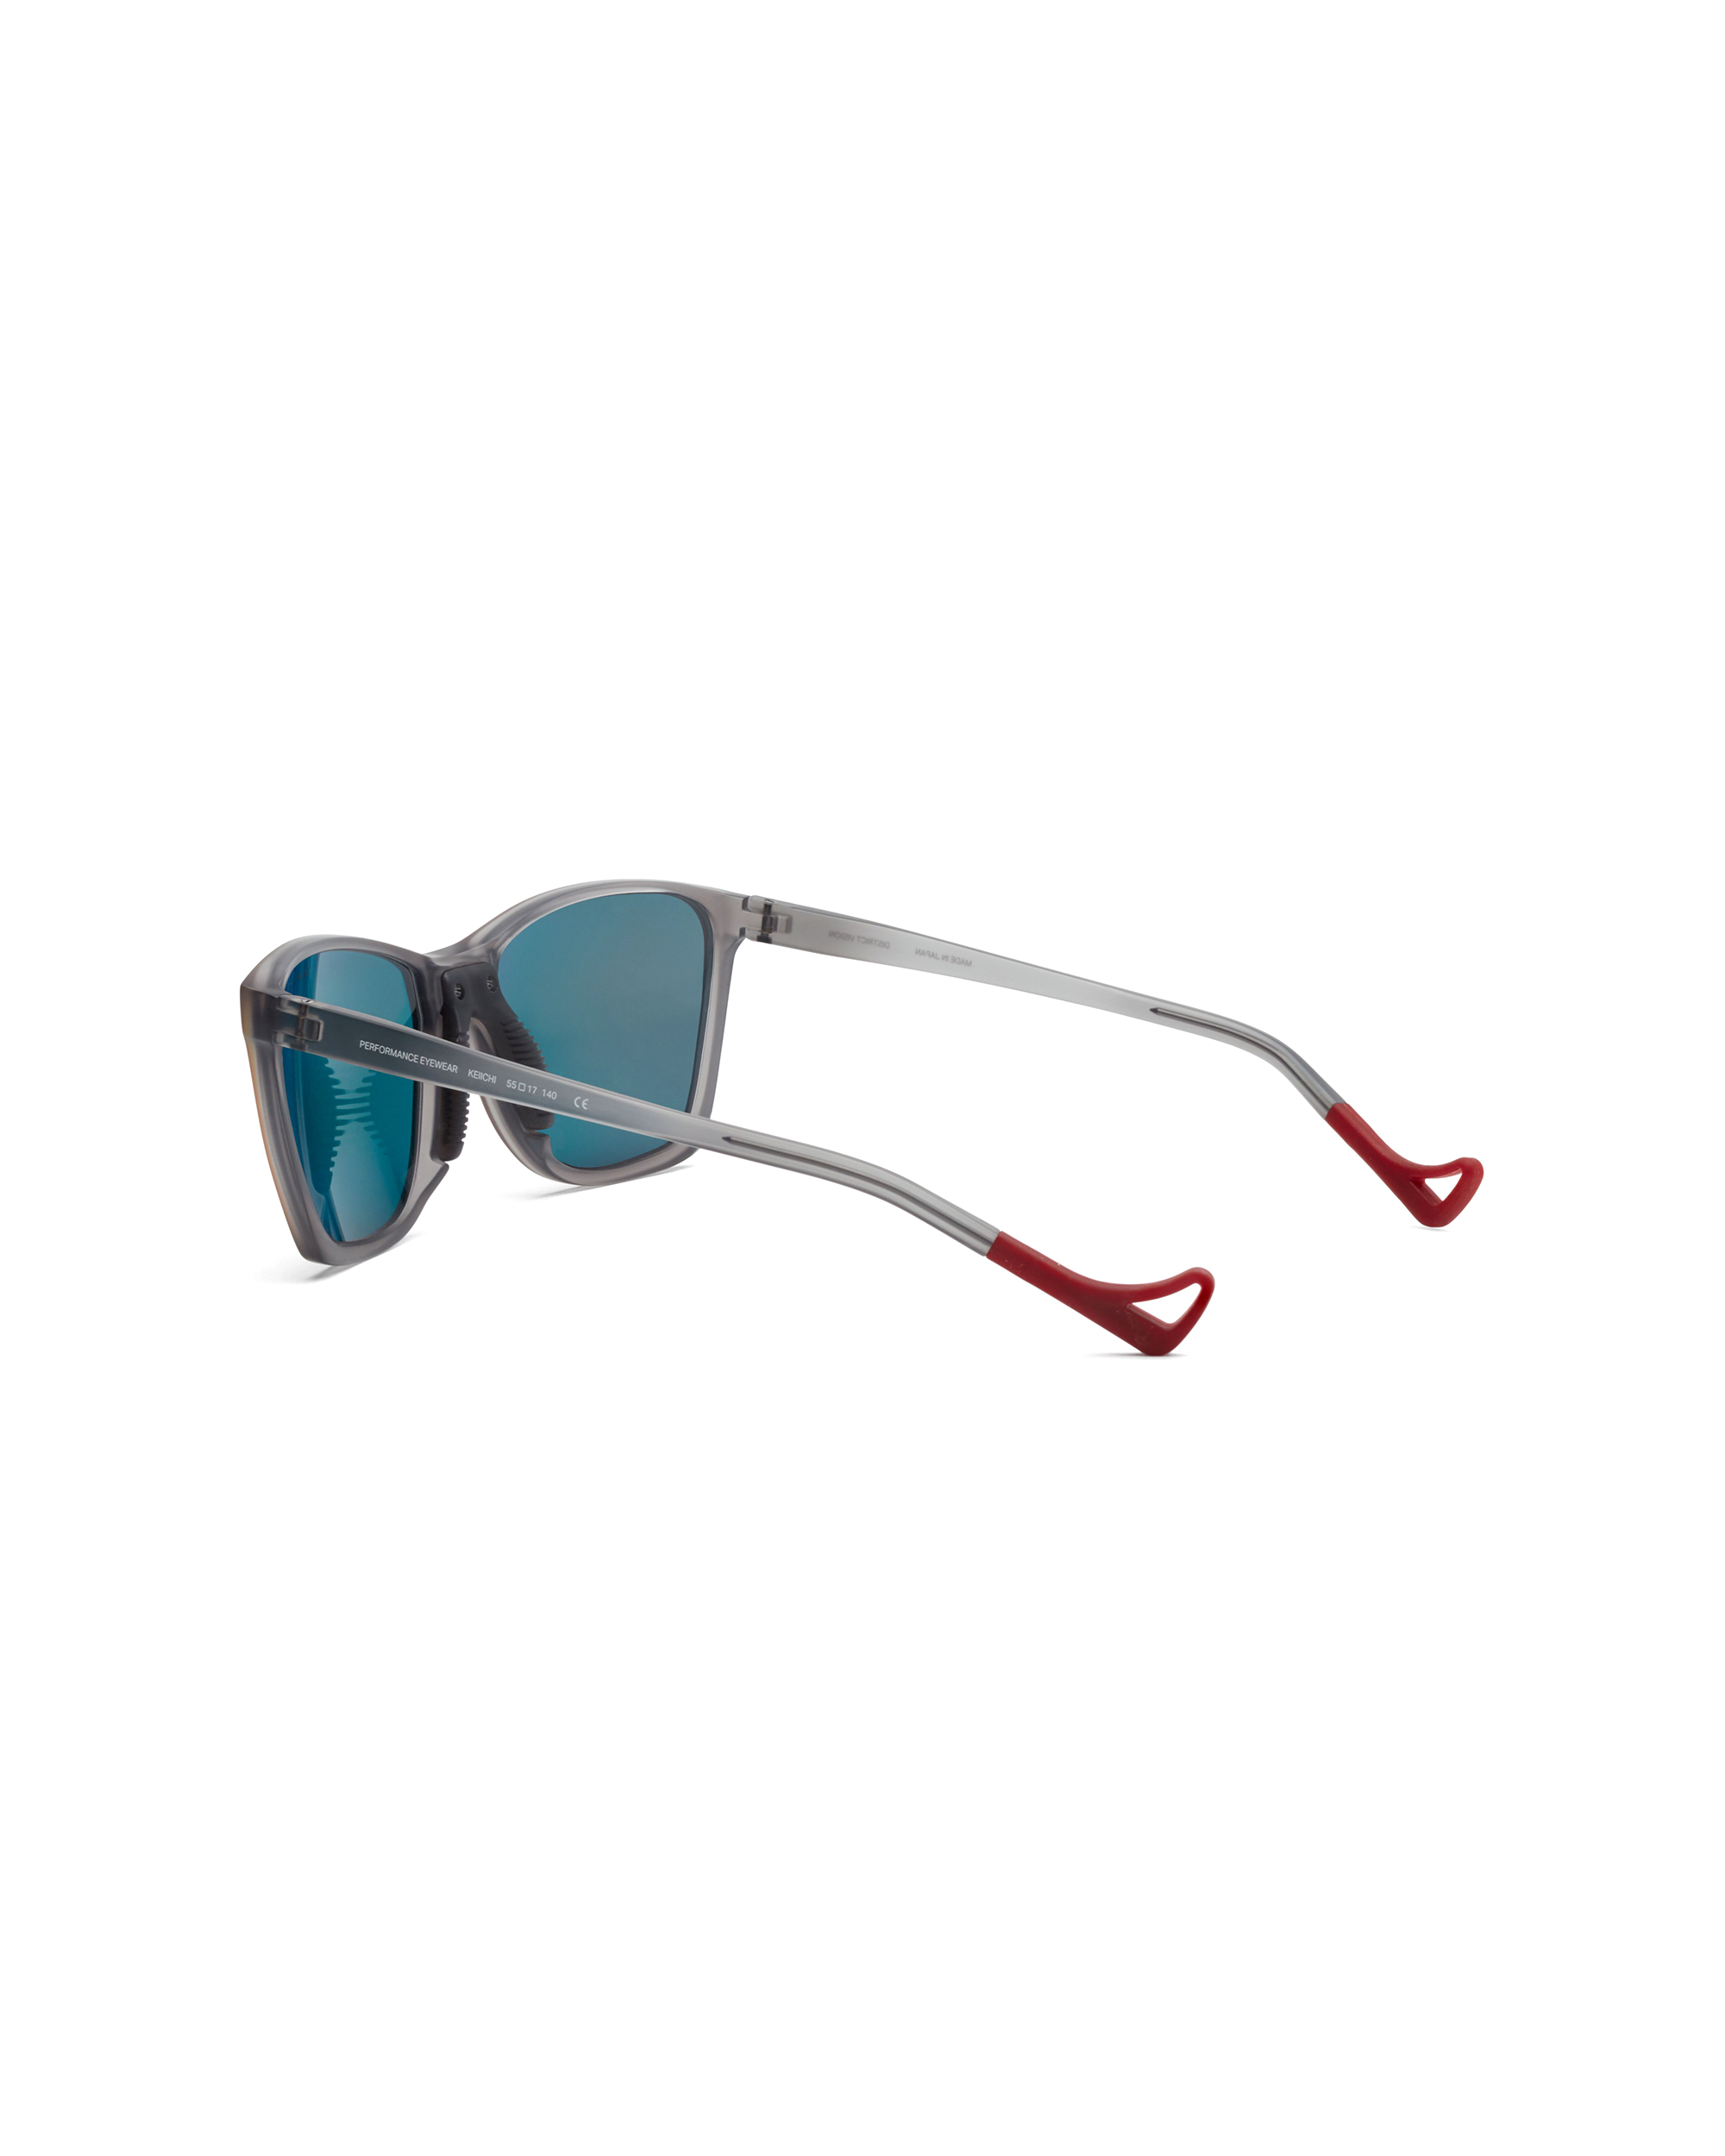 Keiichi Running Sunglasses - Standard Gray / Water Gray